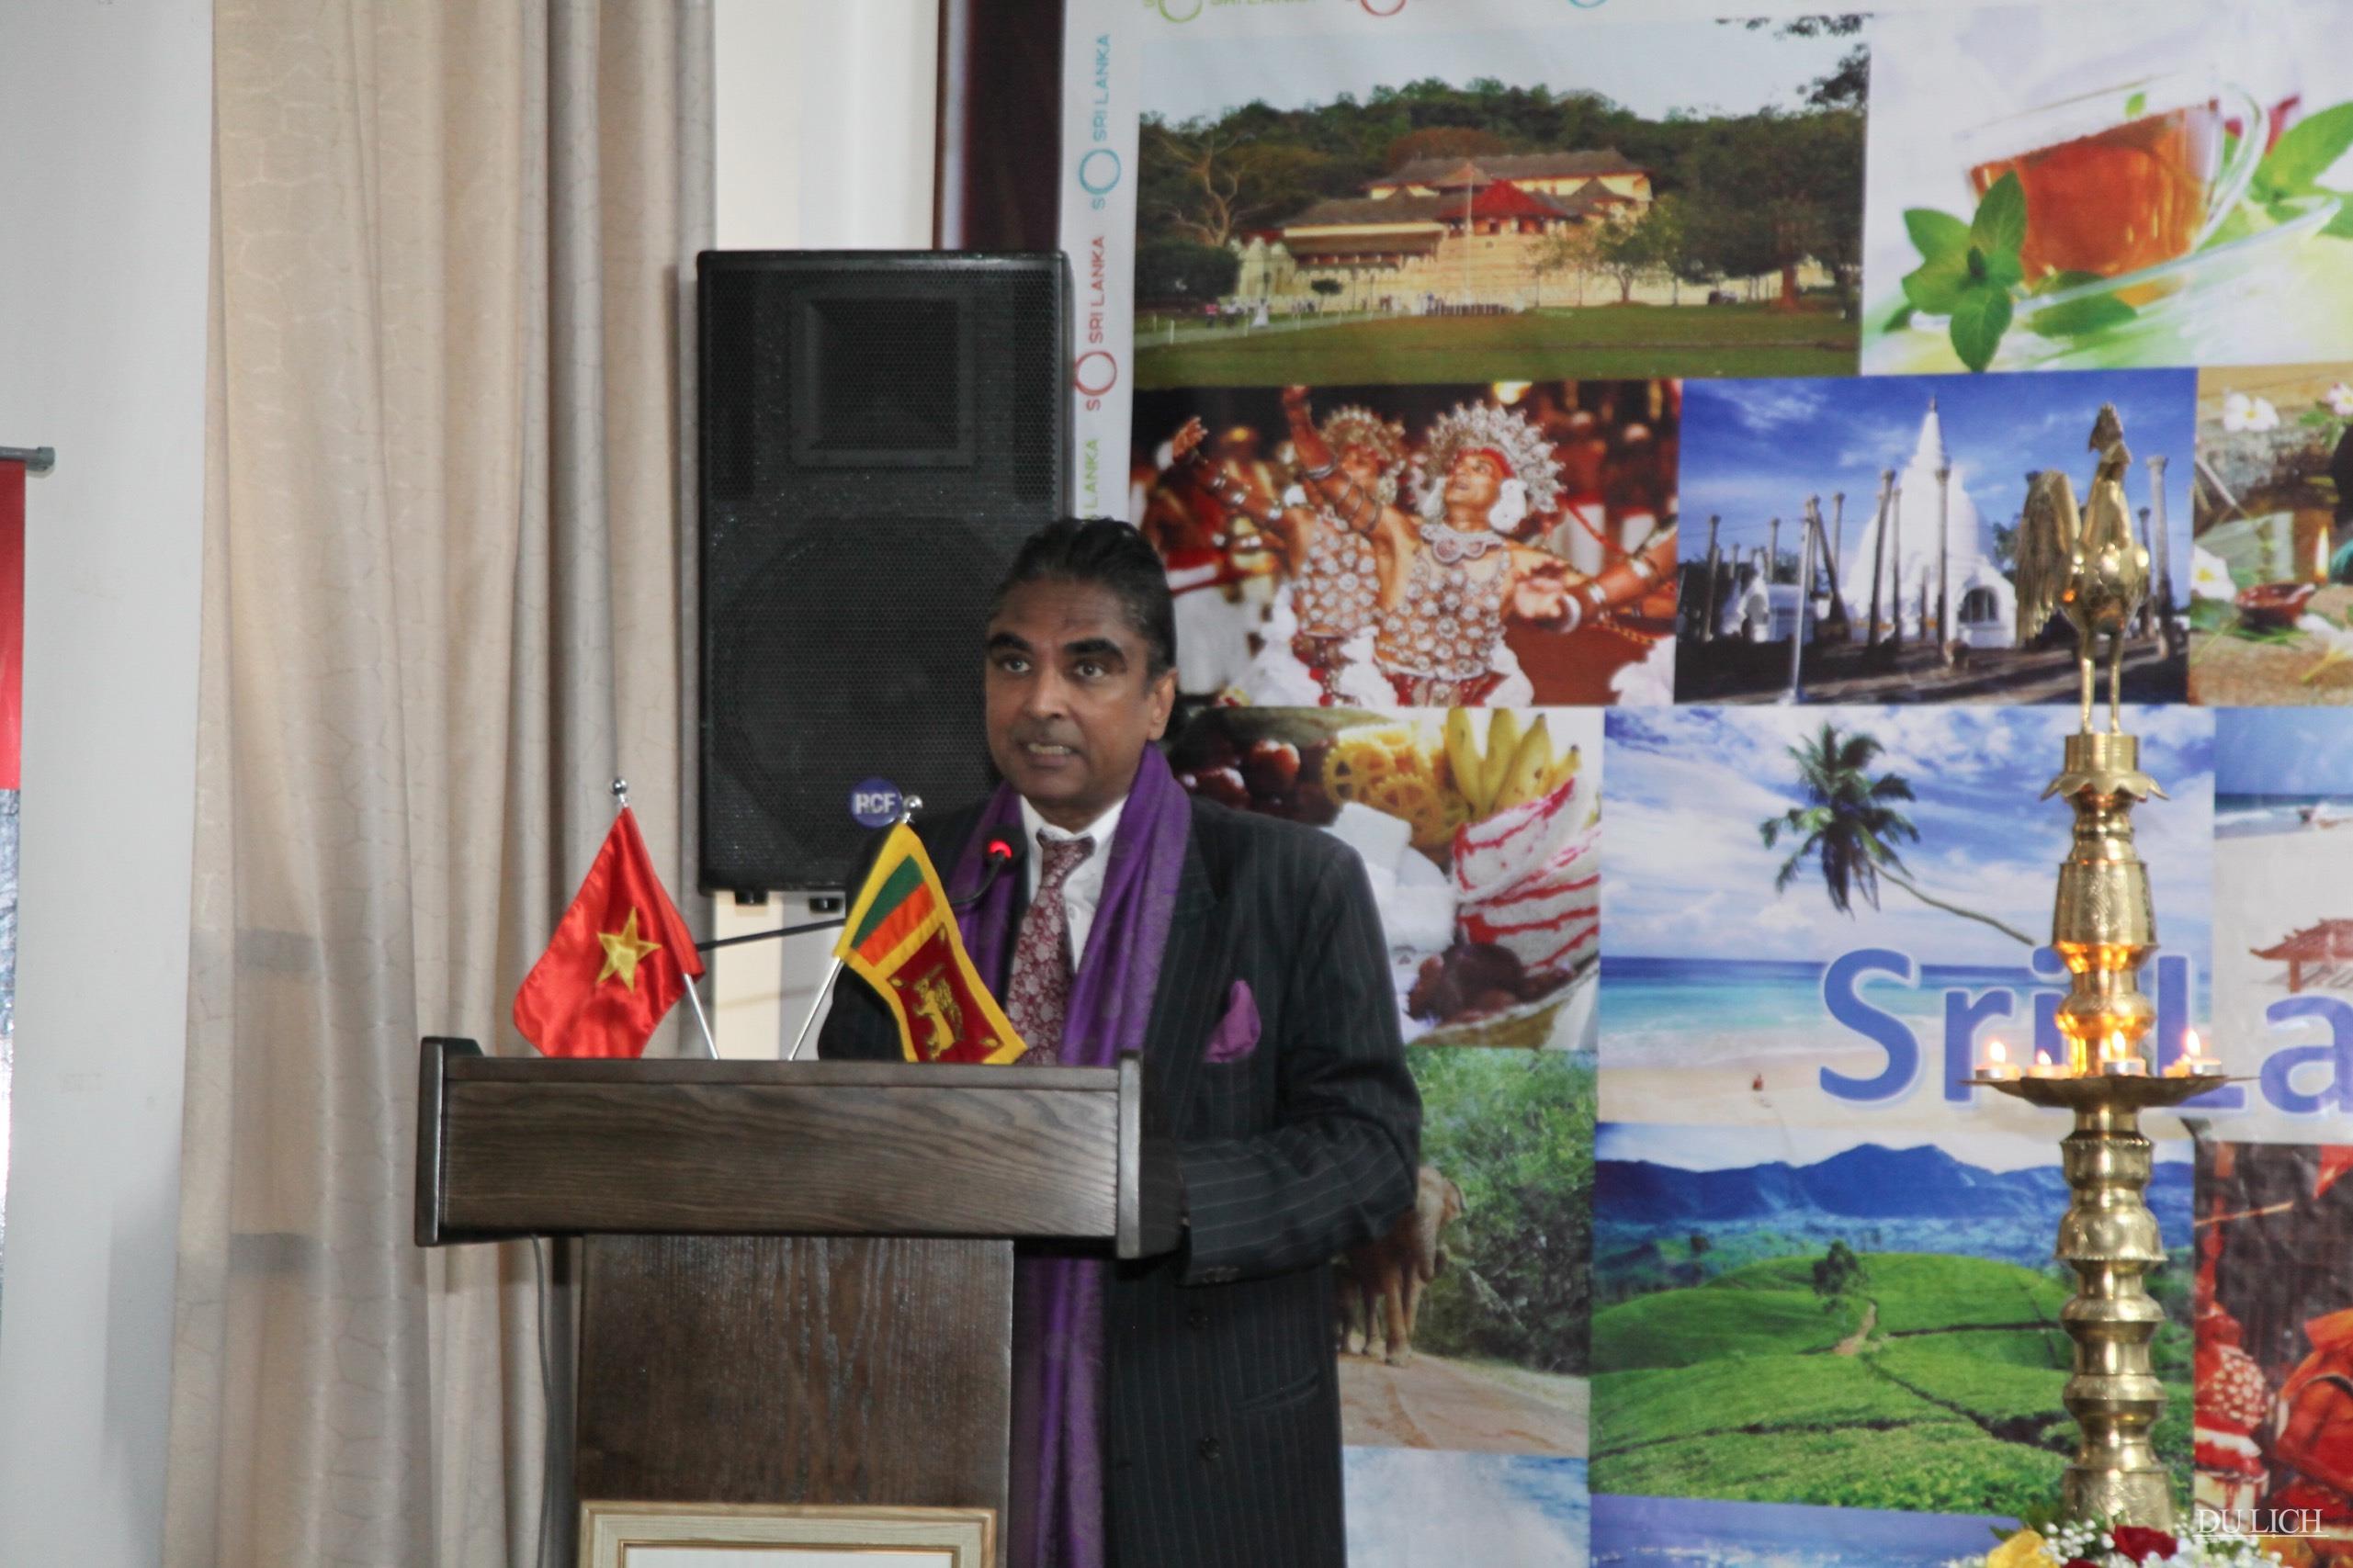 Ngài A. Saj U. Mendis, Đại sứ chỉ định của nước Cộng hoà Xã hội Chủ nghĩa Dân chủ Sri Lanka tại Việt Nam phát biểu tại chương trình